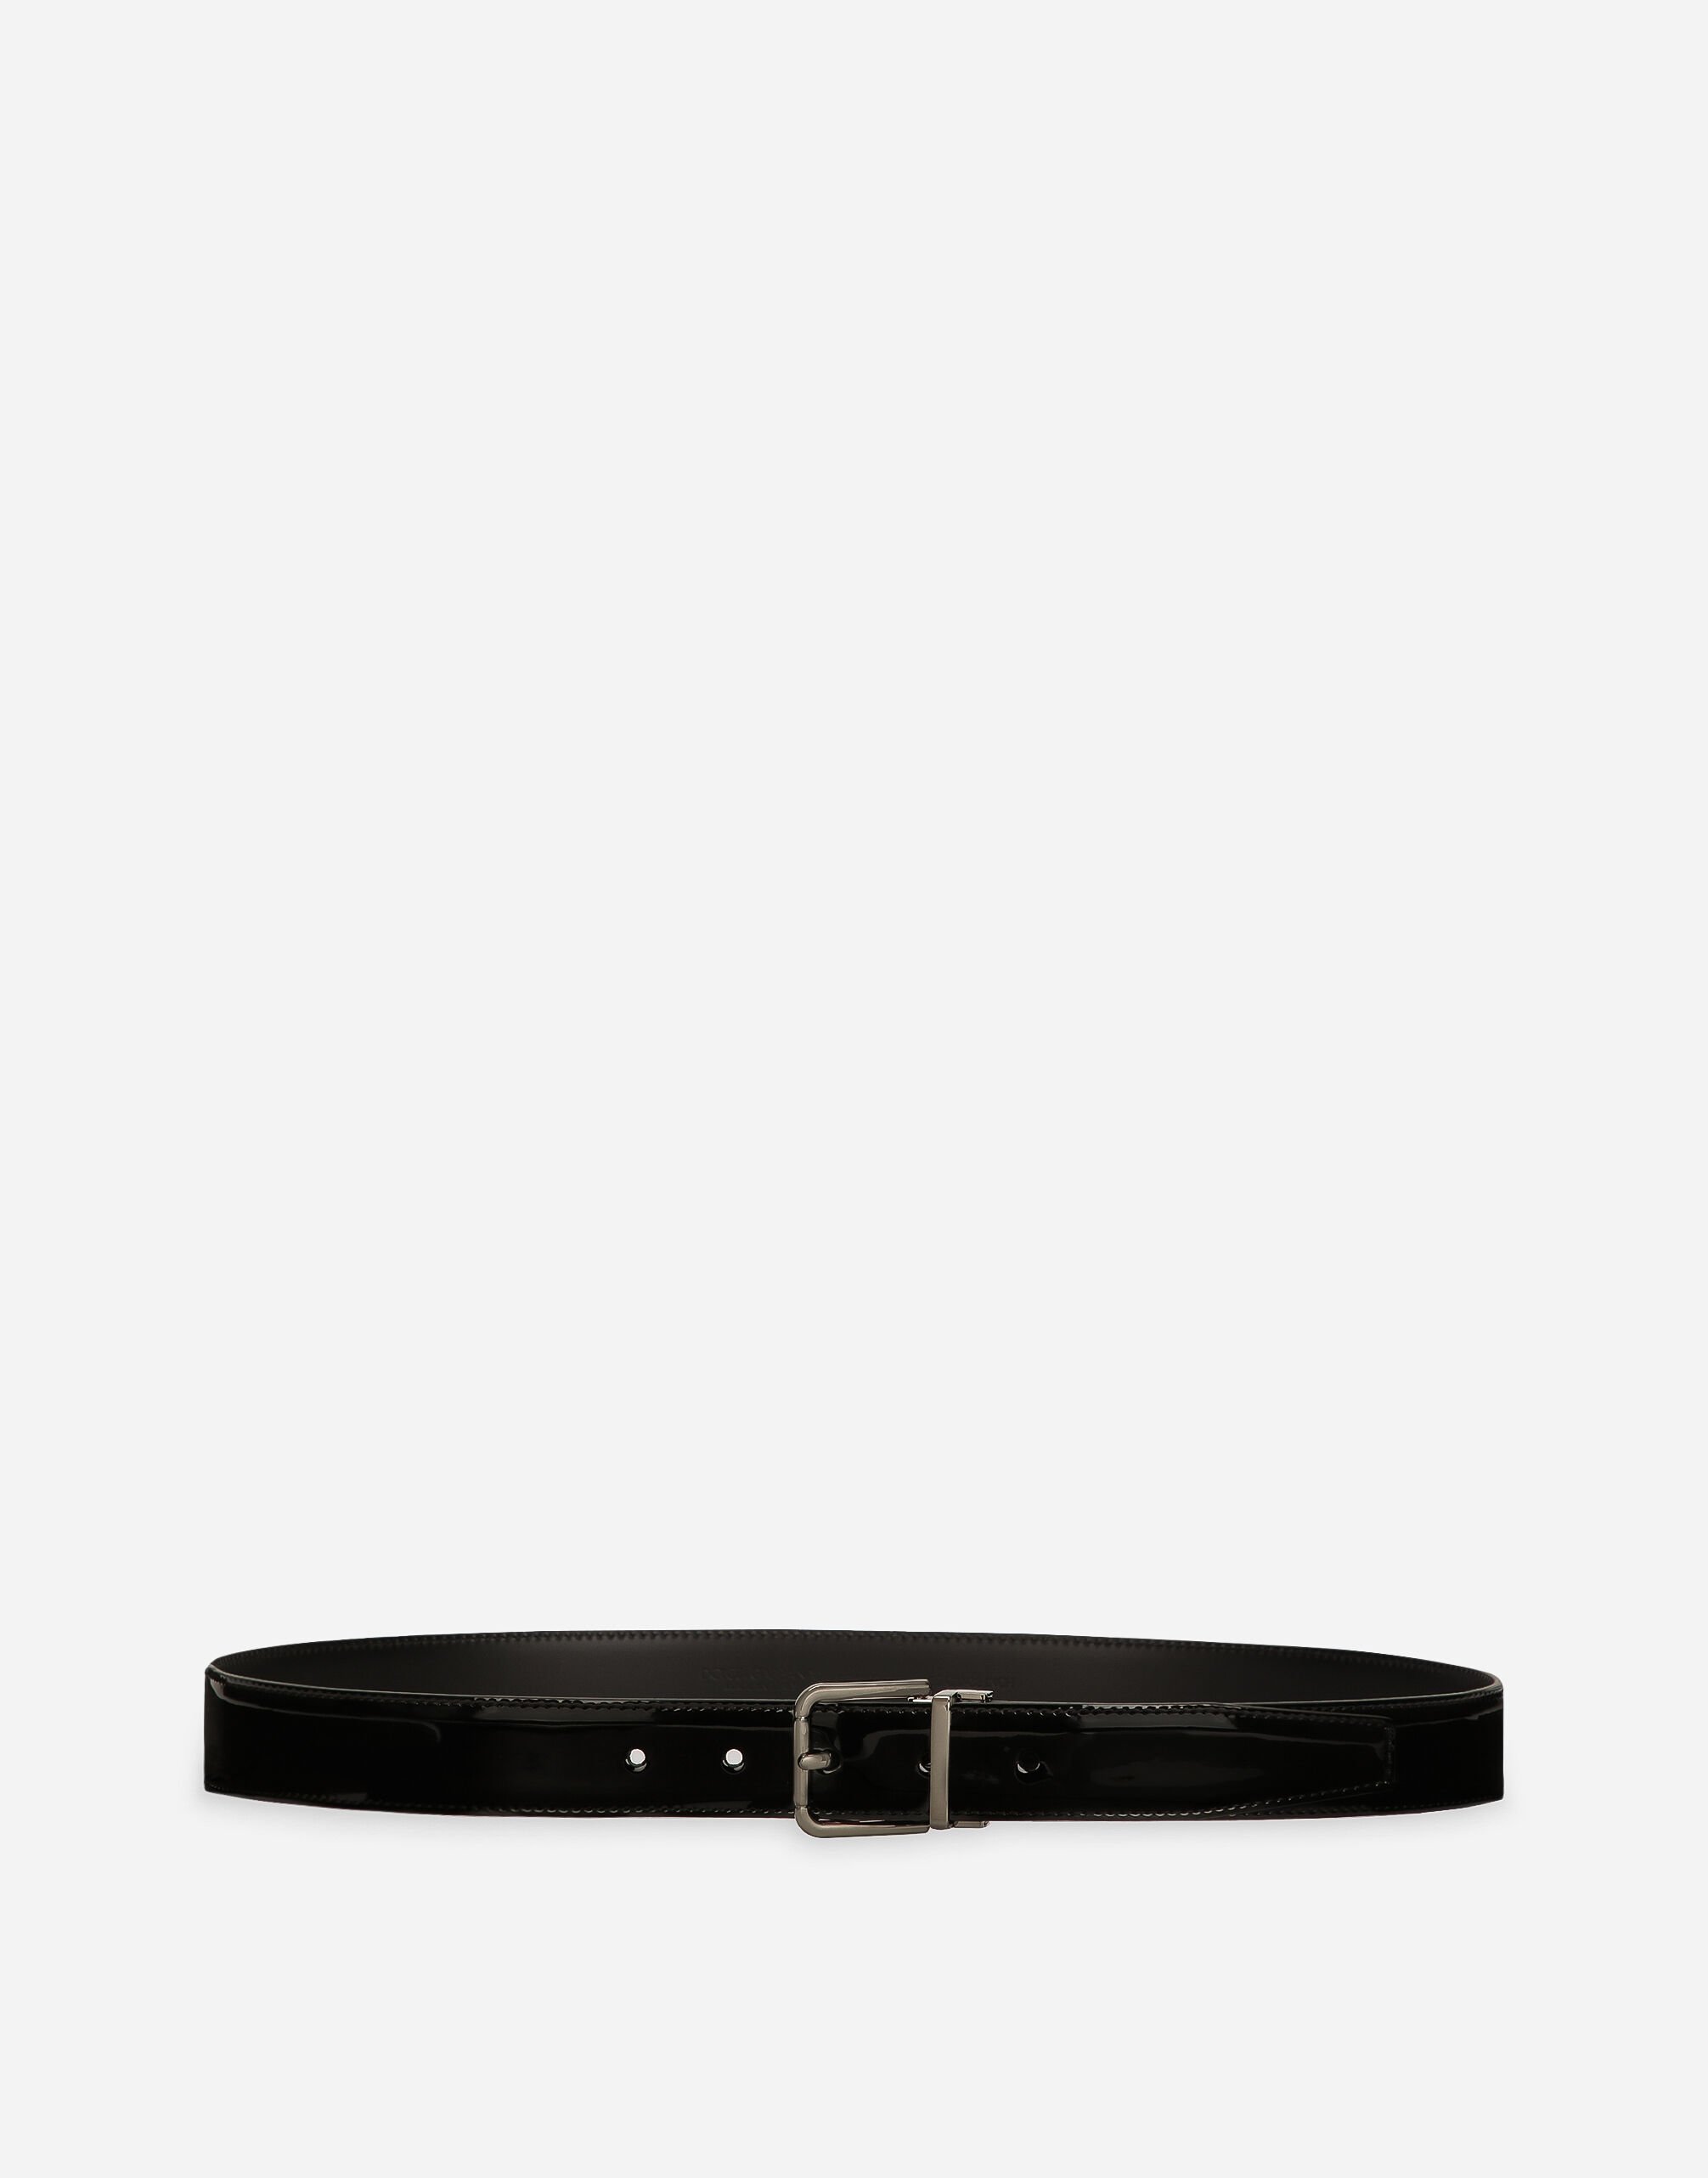 Dolce & Gabbana Patent calfskin belt Black G2RR4TFLSIM